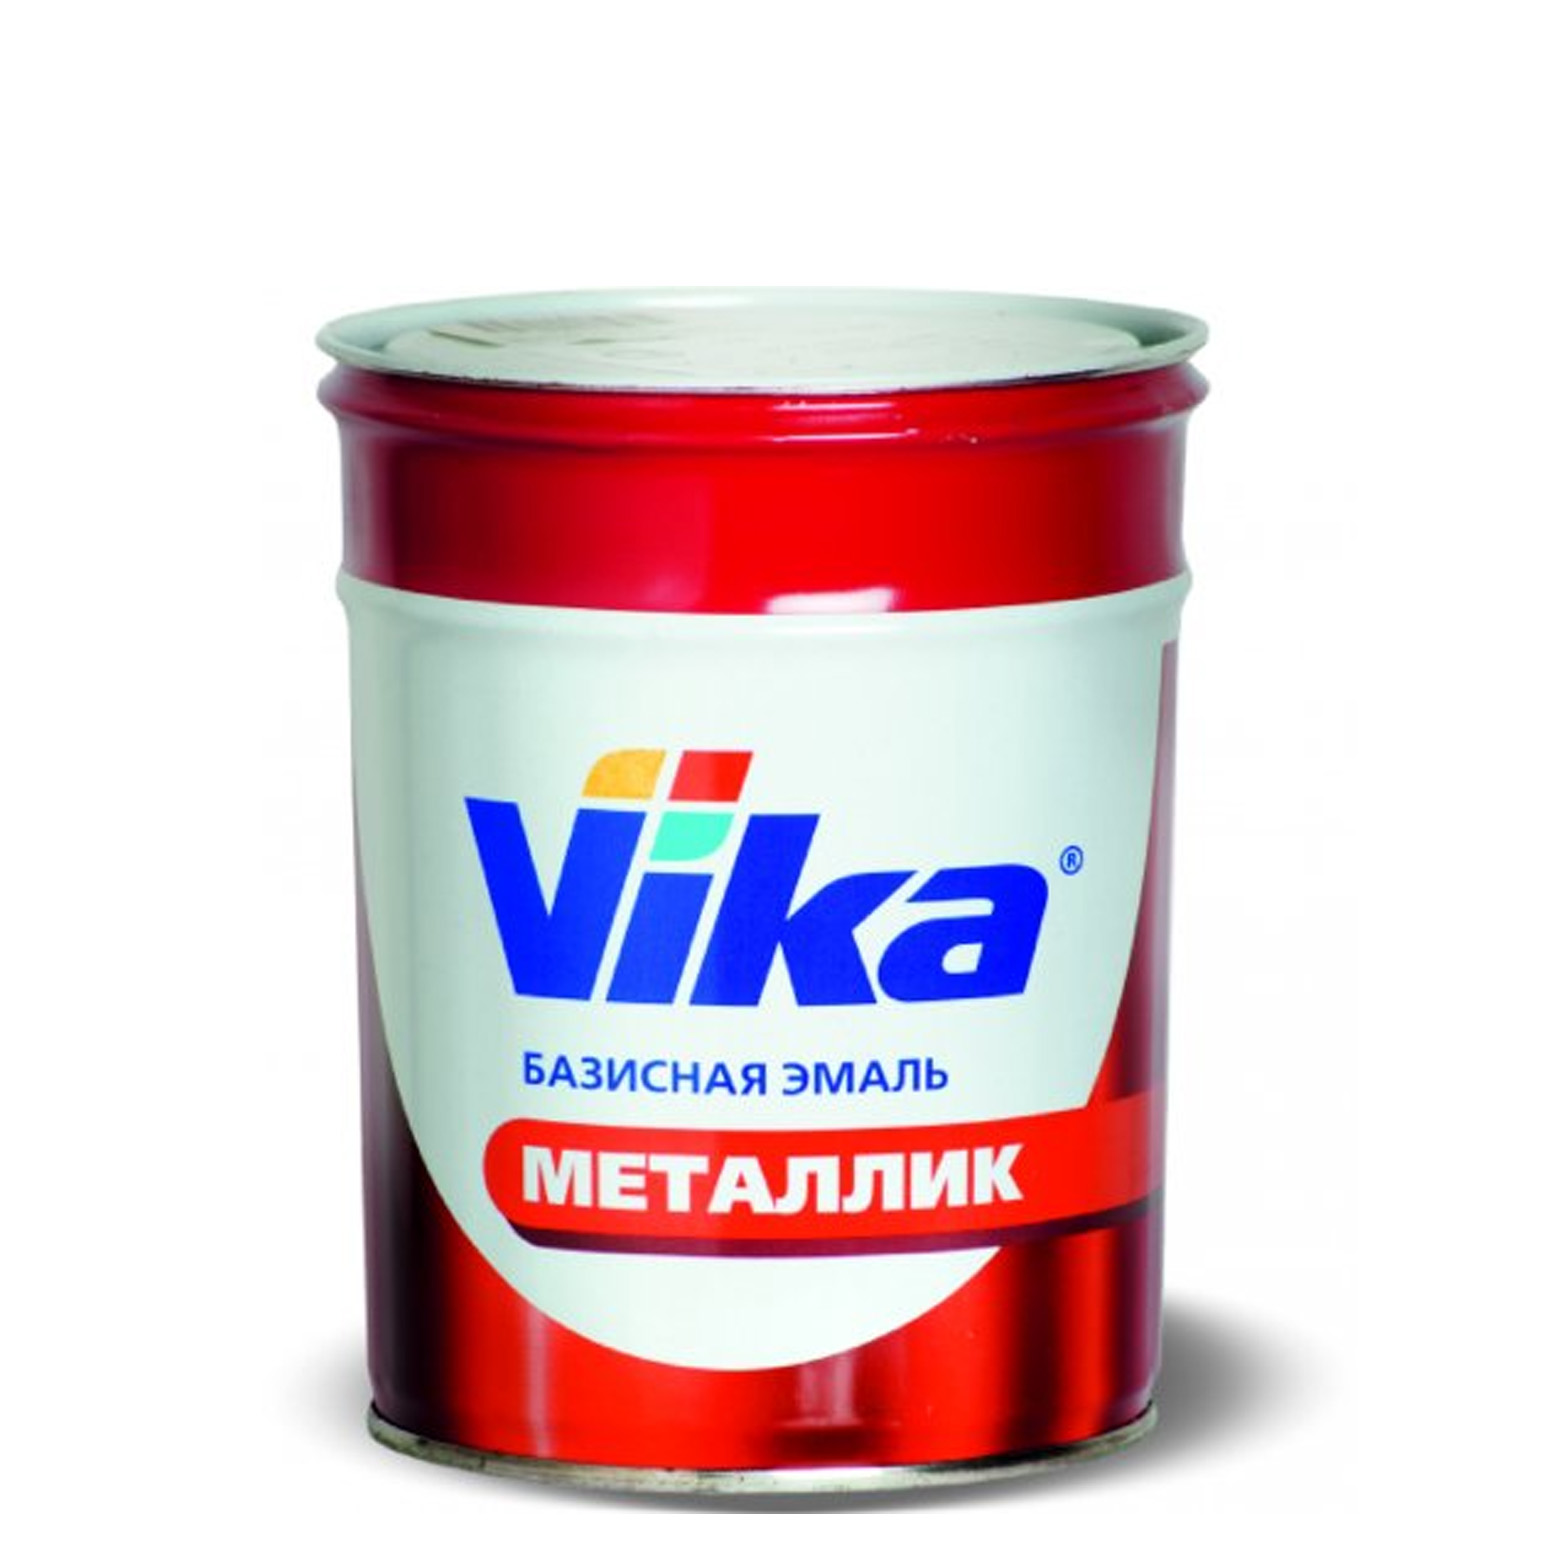 Фото 1 - Автоэмаль Металлик, цвет Сильвер, профессиональная базовая, - 0,9 кг Vika/Вика.